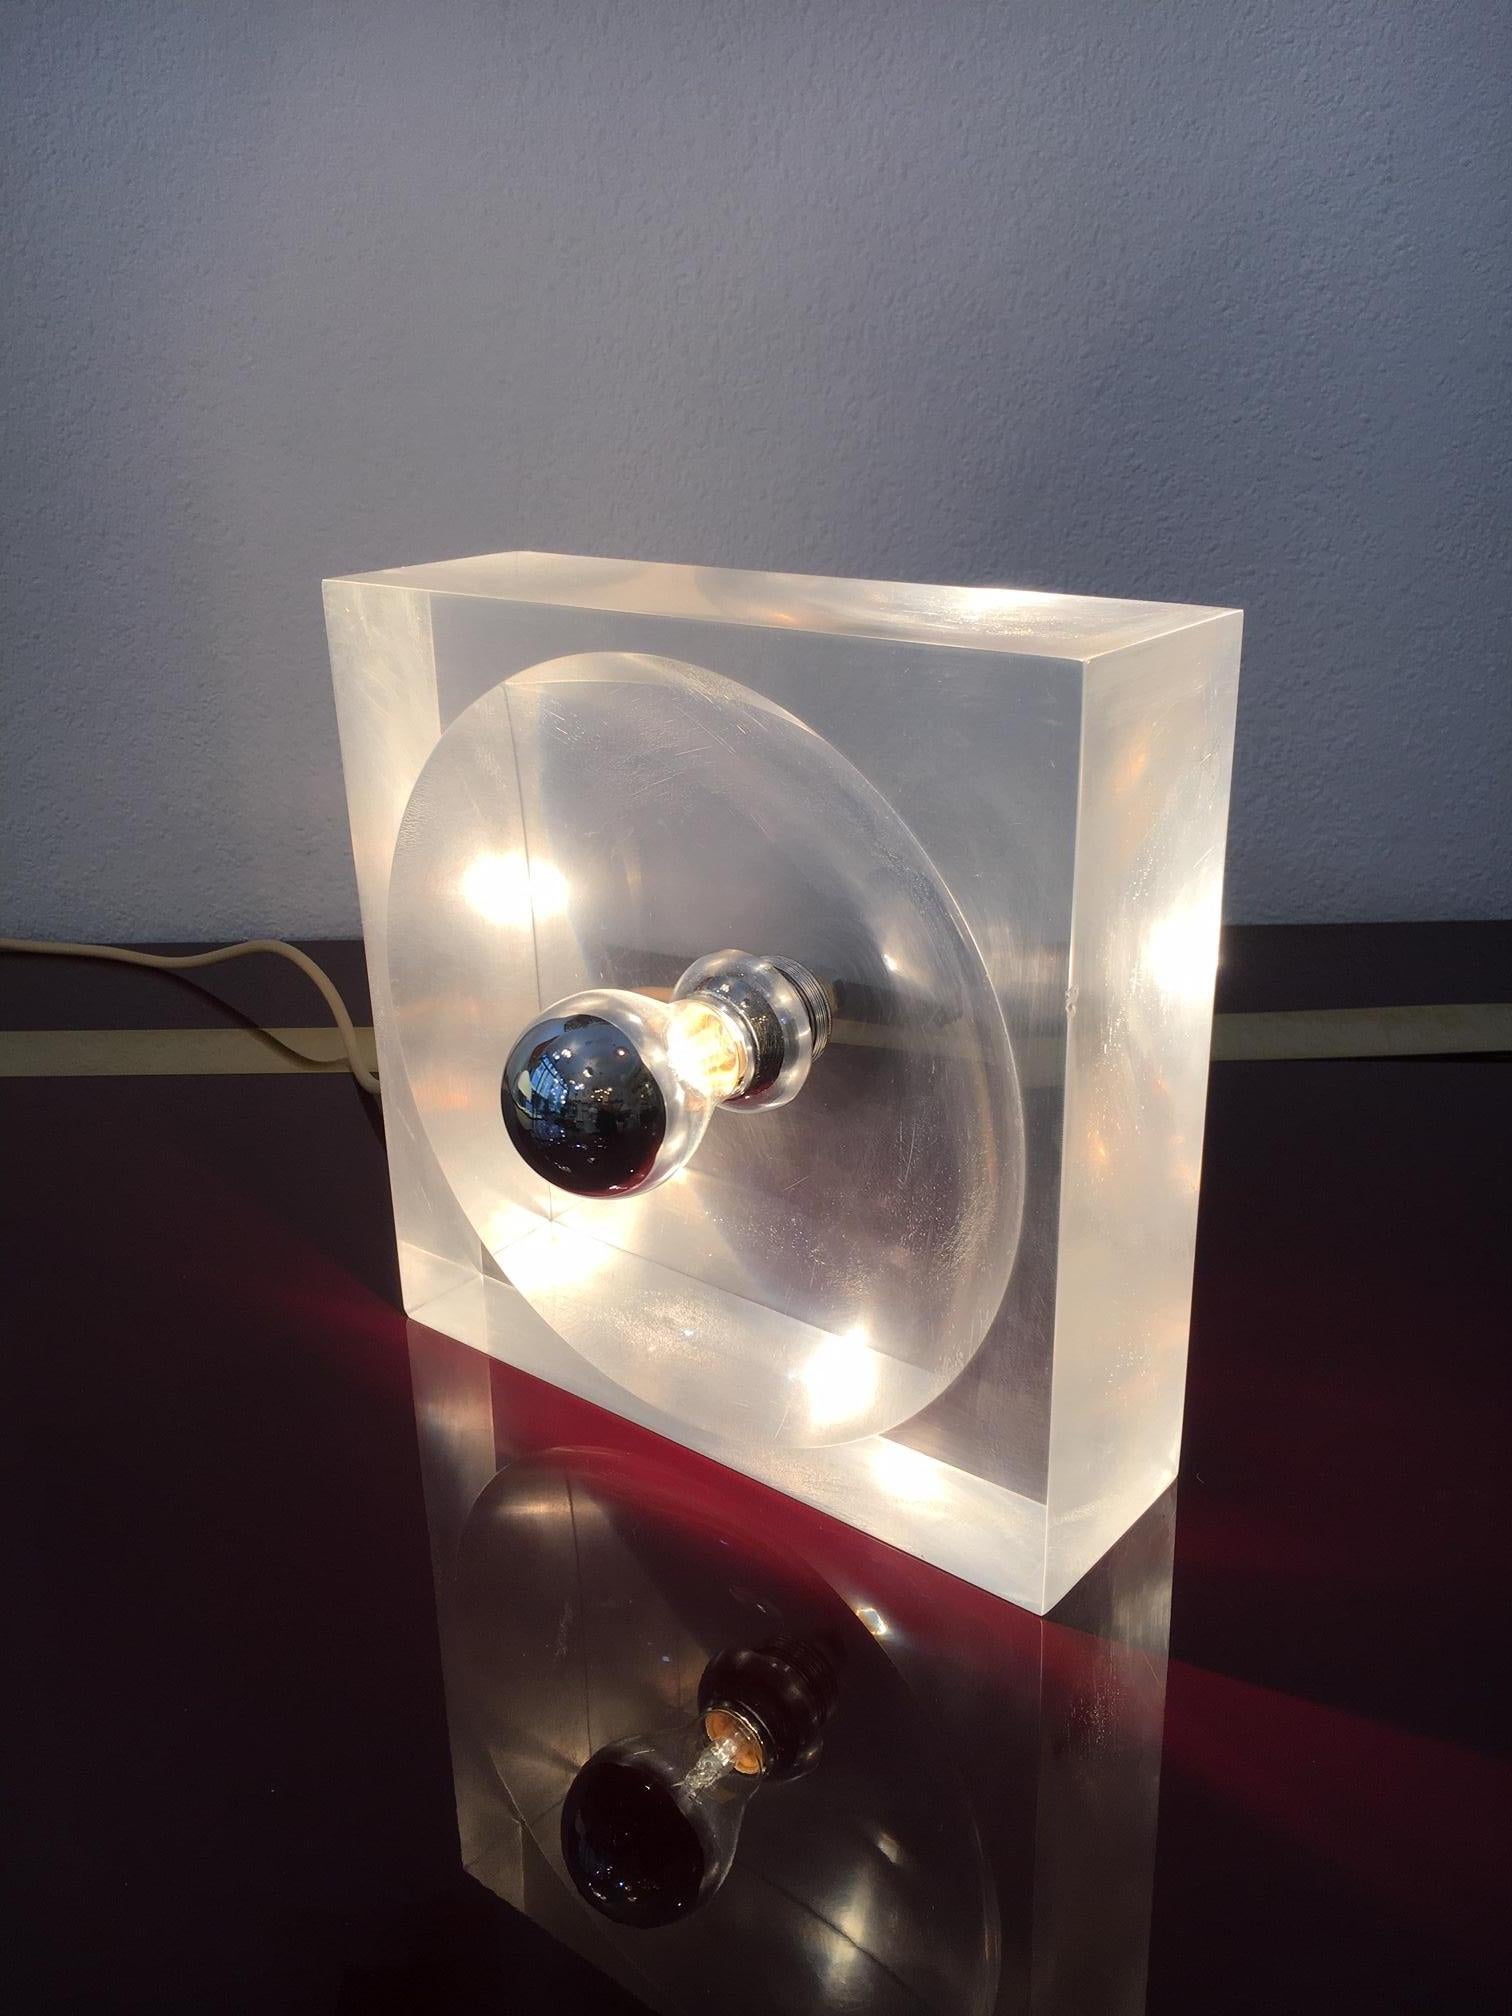 Quadratische gebogene Acryl-Tischlampe von Michel Dumas, Frankreich ca. 1970s
Acryl ist leicht verblasst.
Chrom-Details. 
30 x 30 cm.
 